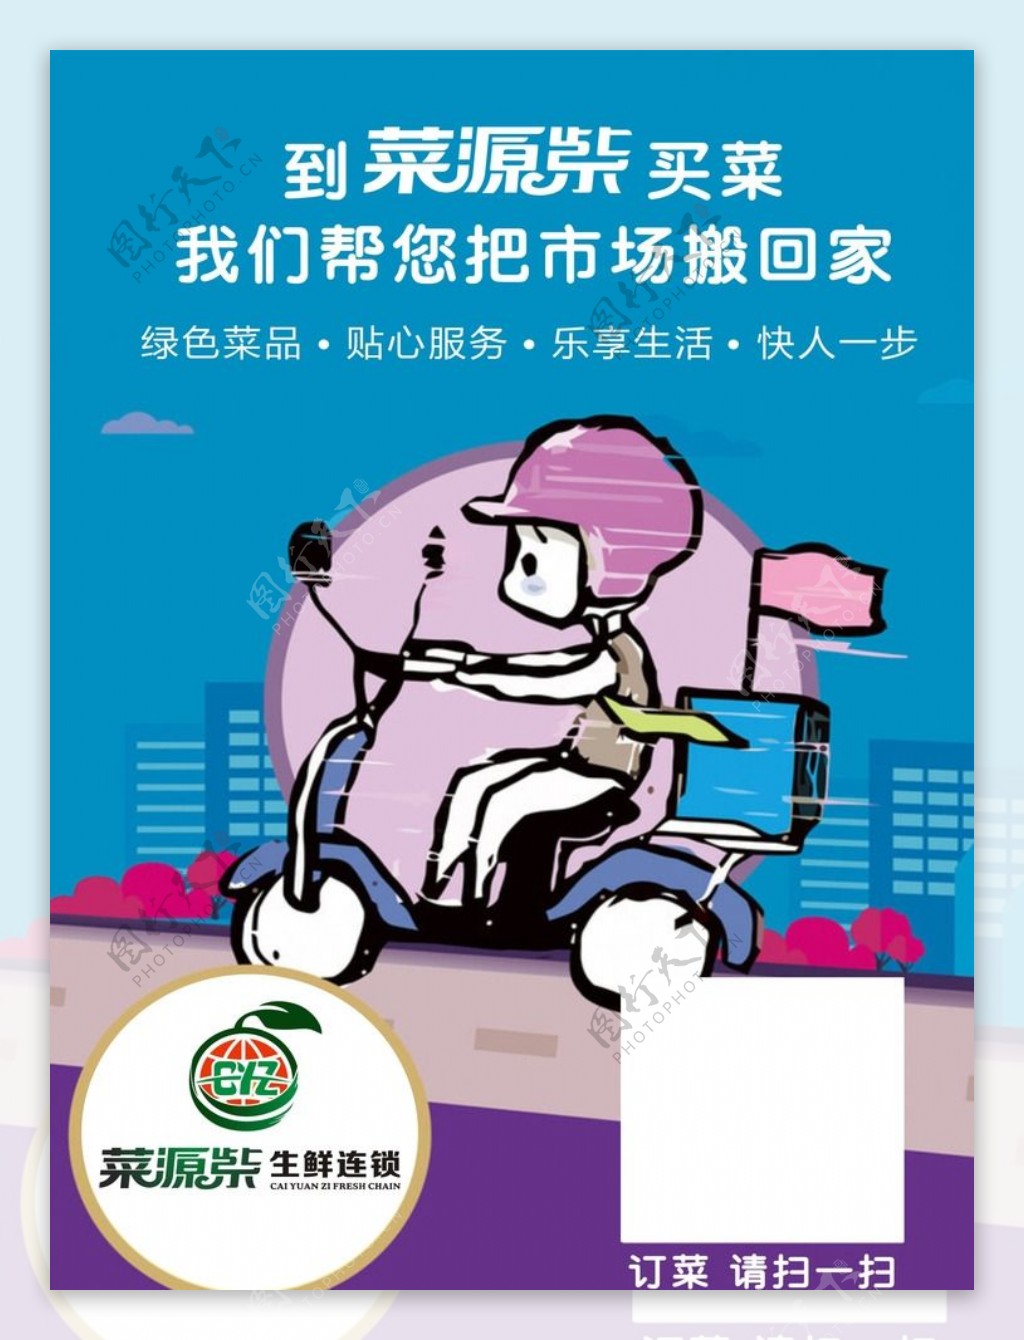 菜源紫物料宣传海报设计